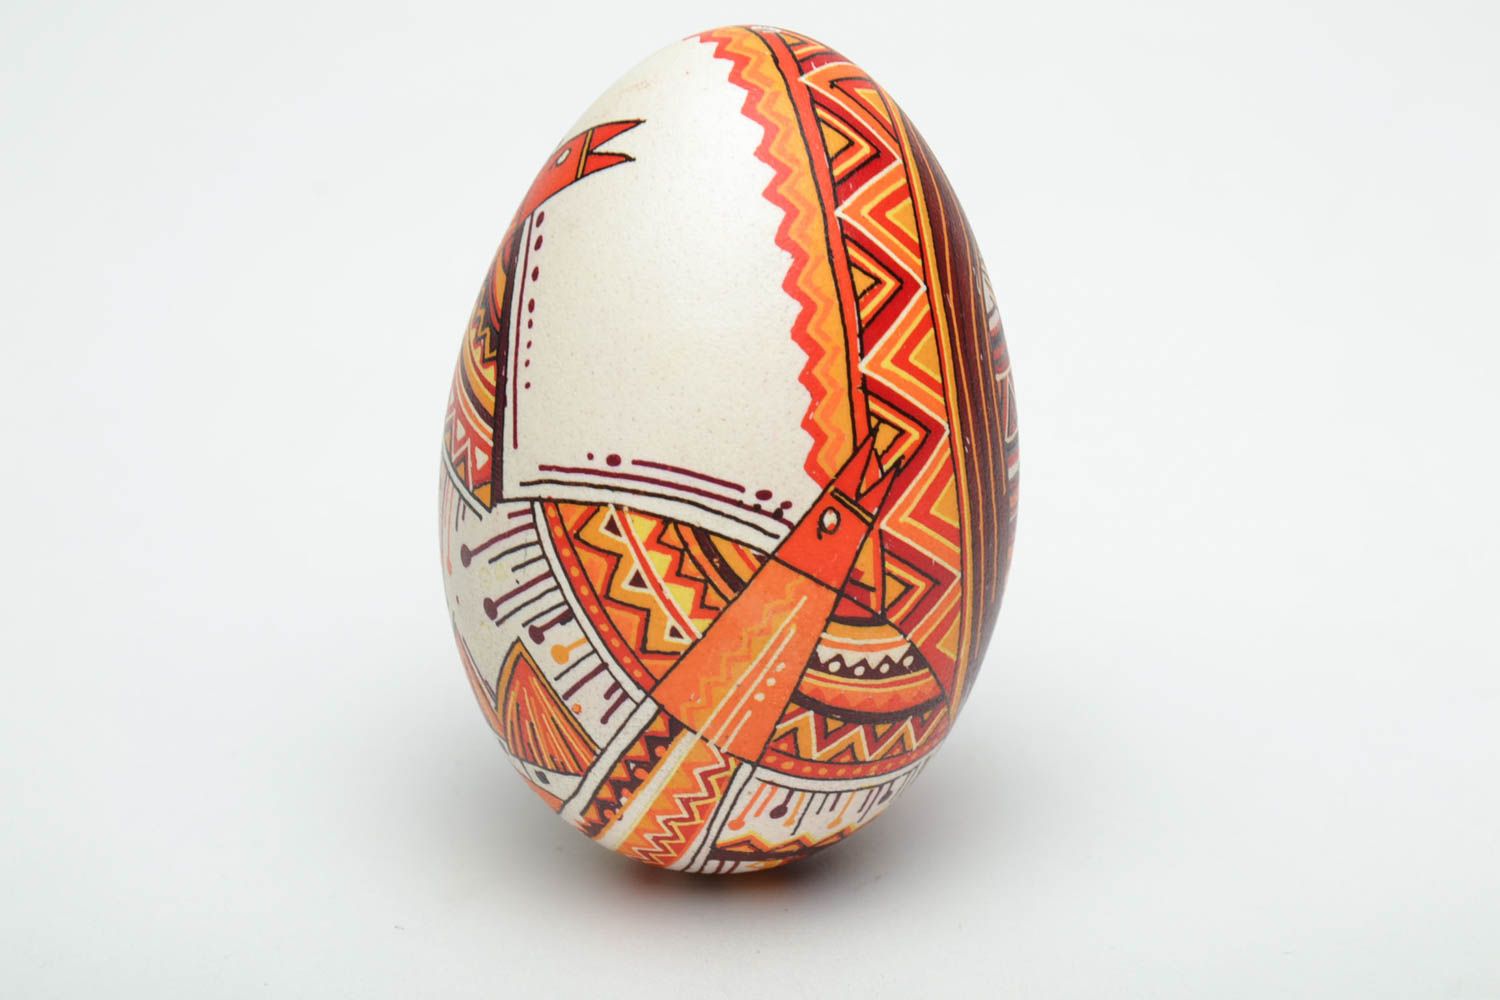 Расписное пасхальное яйцо декорированное анилиновыми красителями фото 3